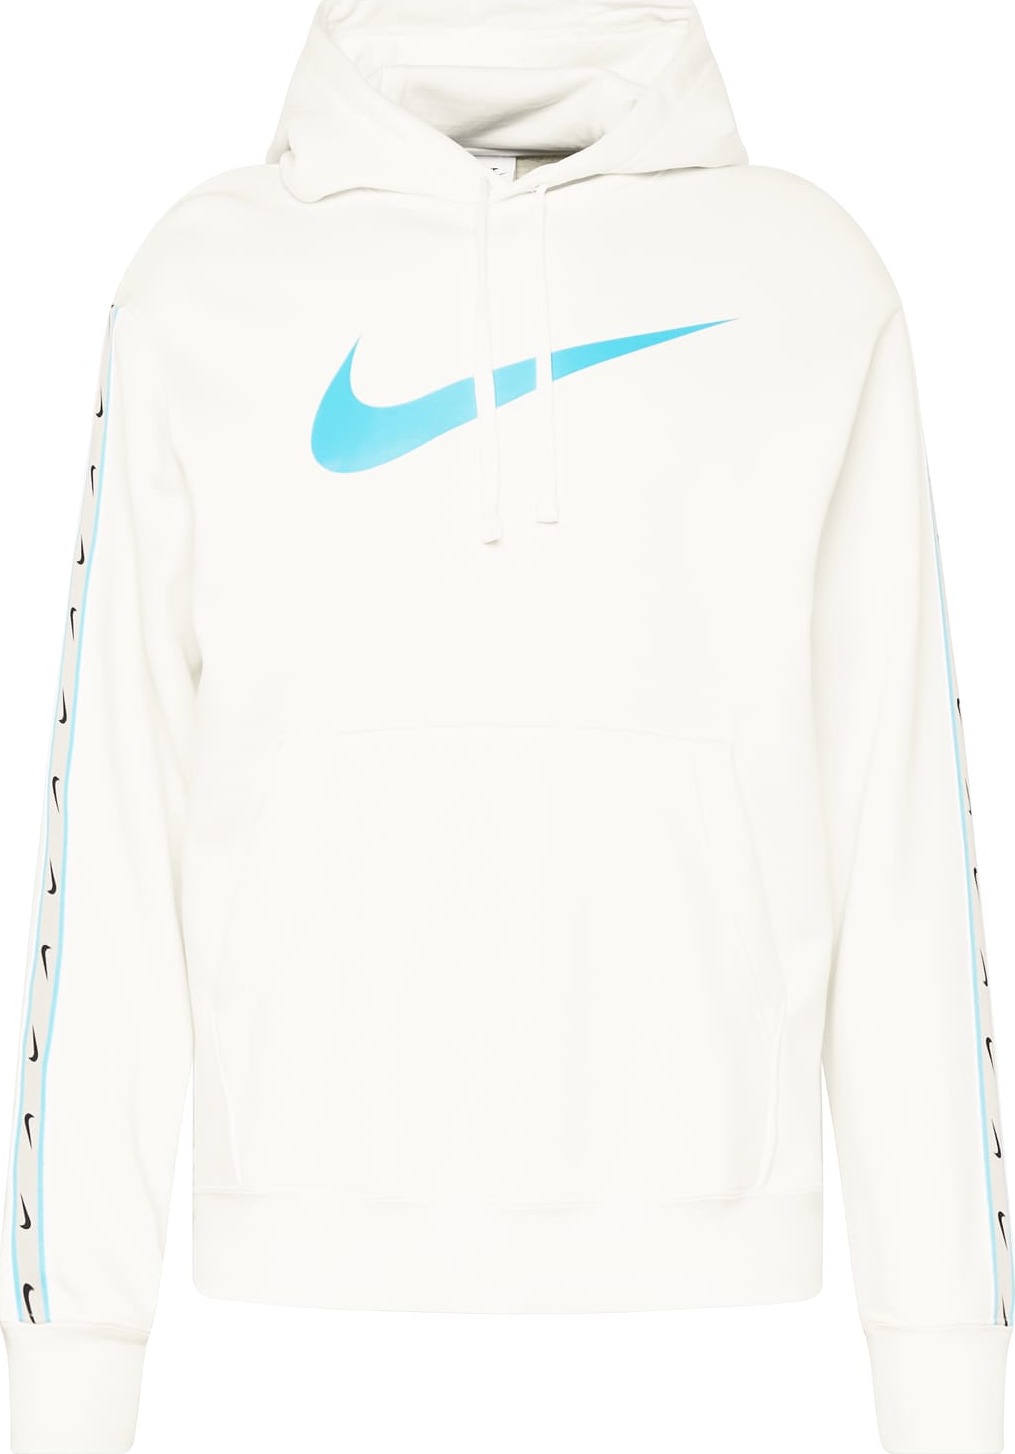 Nike Sportswear Mikina 'REPEAT' nebeská modř / bílá